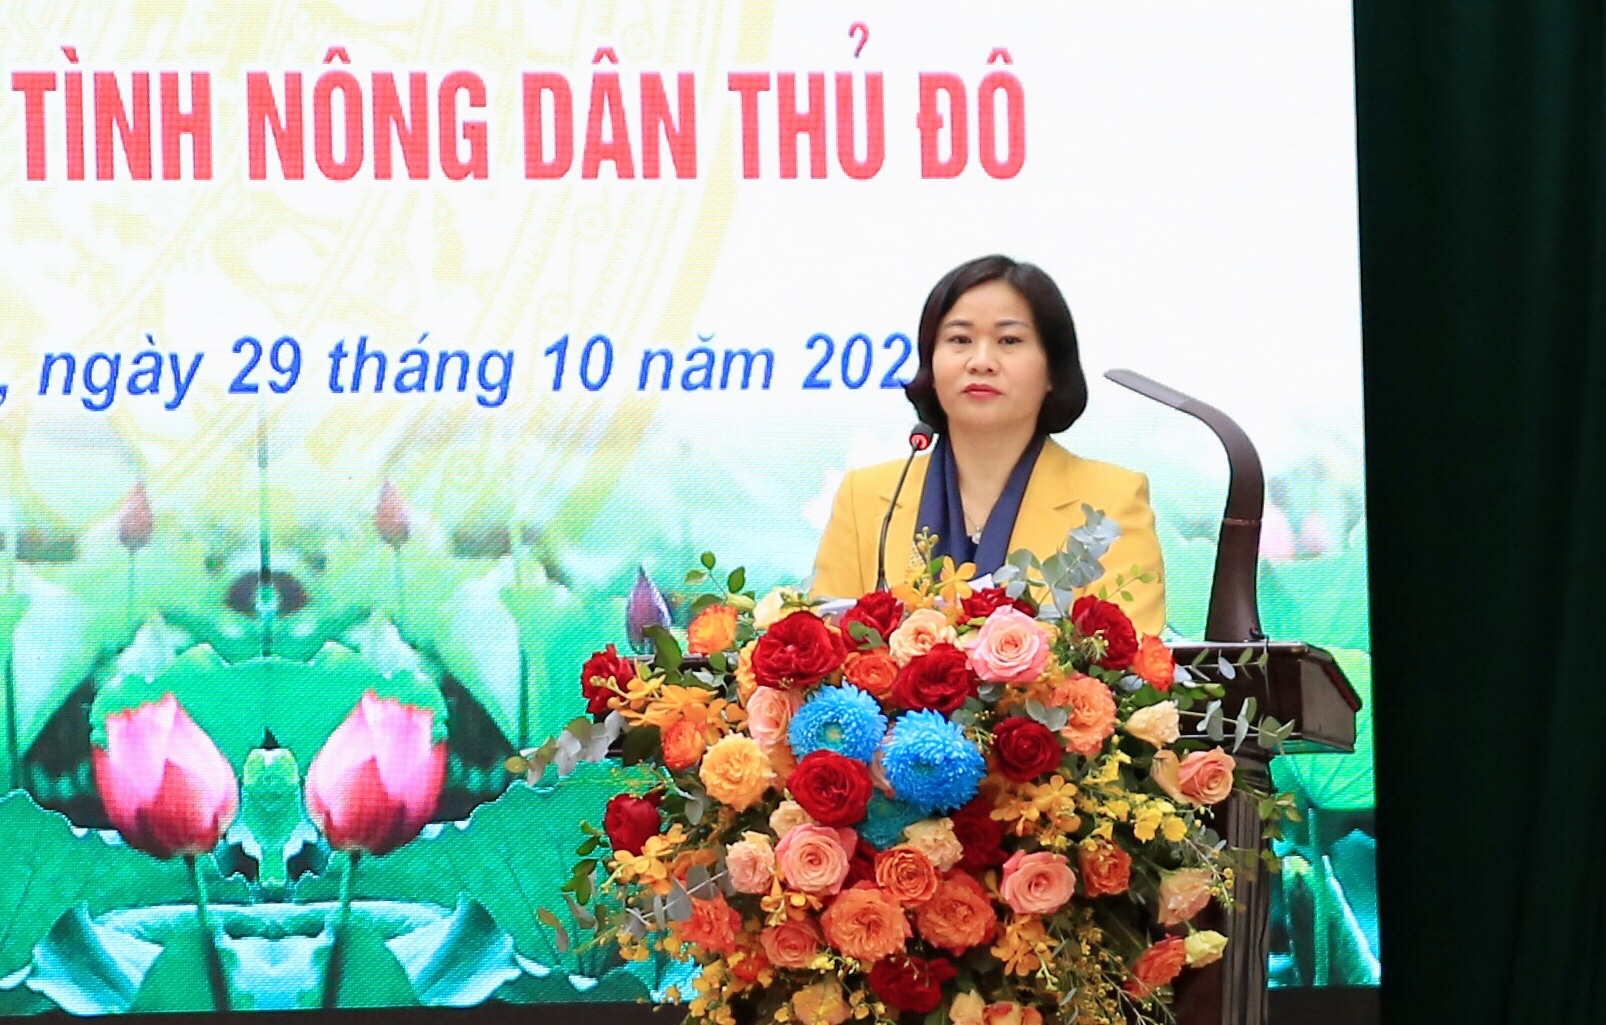 Hà Nội: Tôn vinh 18 Nông dân Thủ đô xuất sắc, 18 Chi hội nghề nghiệp tiêu biểu - Ảnh 2.